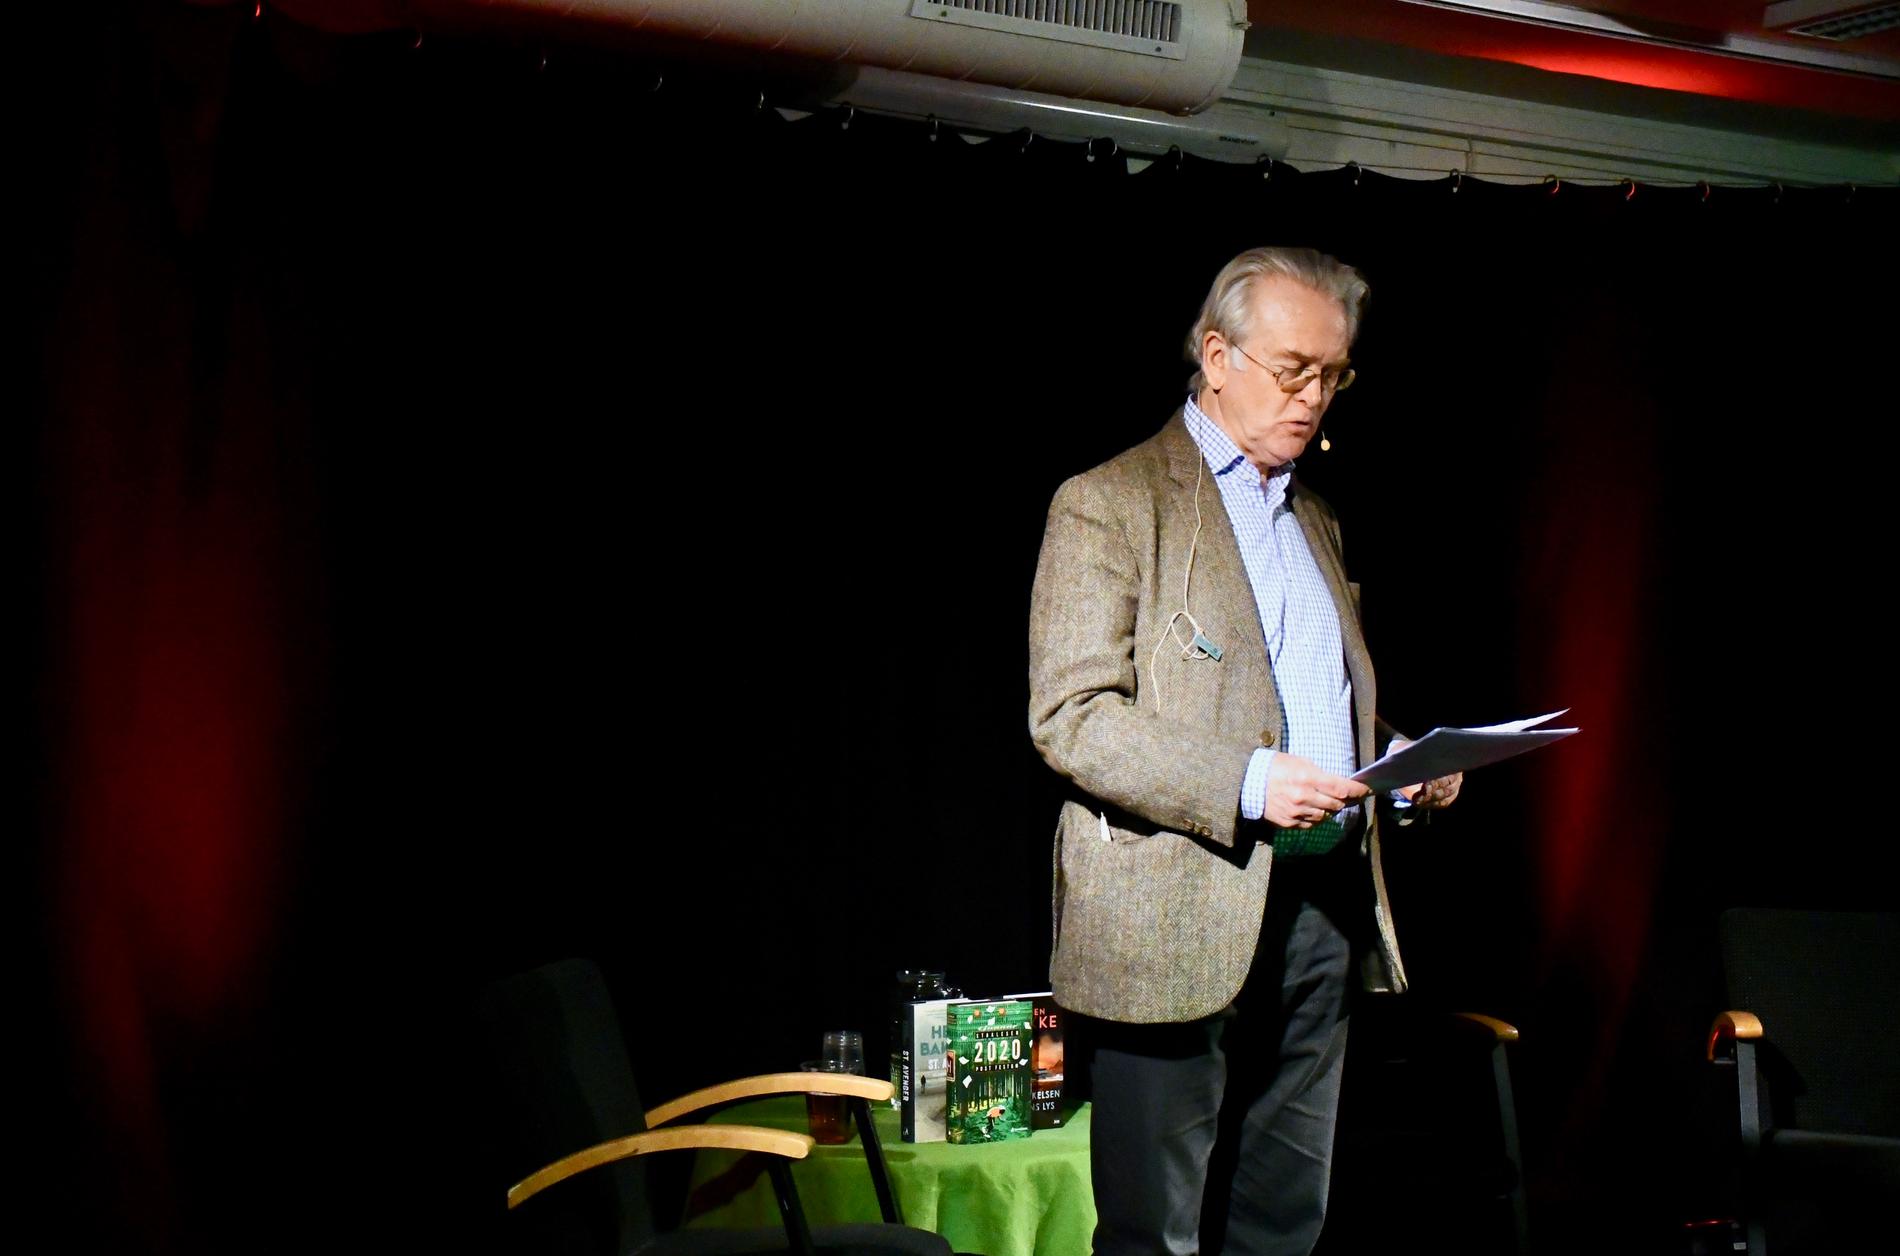 Forfatter Gunnar Staalesen innledet på kveldens krimfestival.||Gunnar Staalesen og Simen Ingemundsen i samtale.